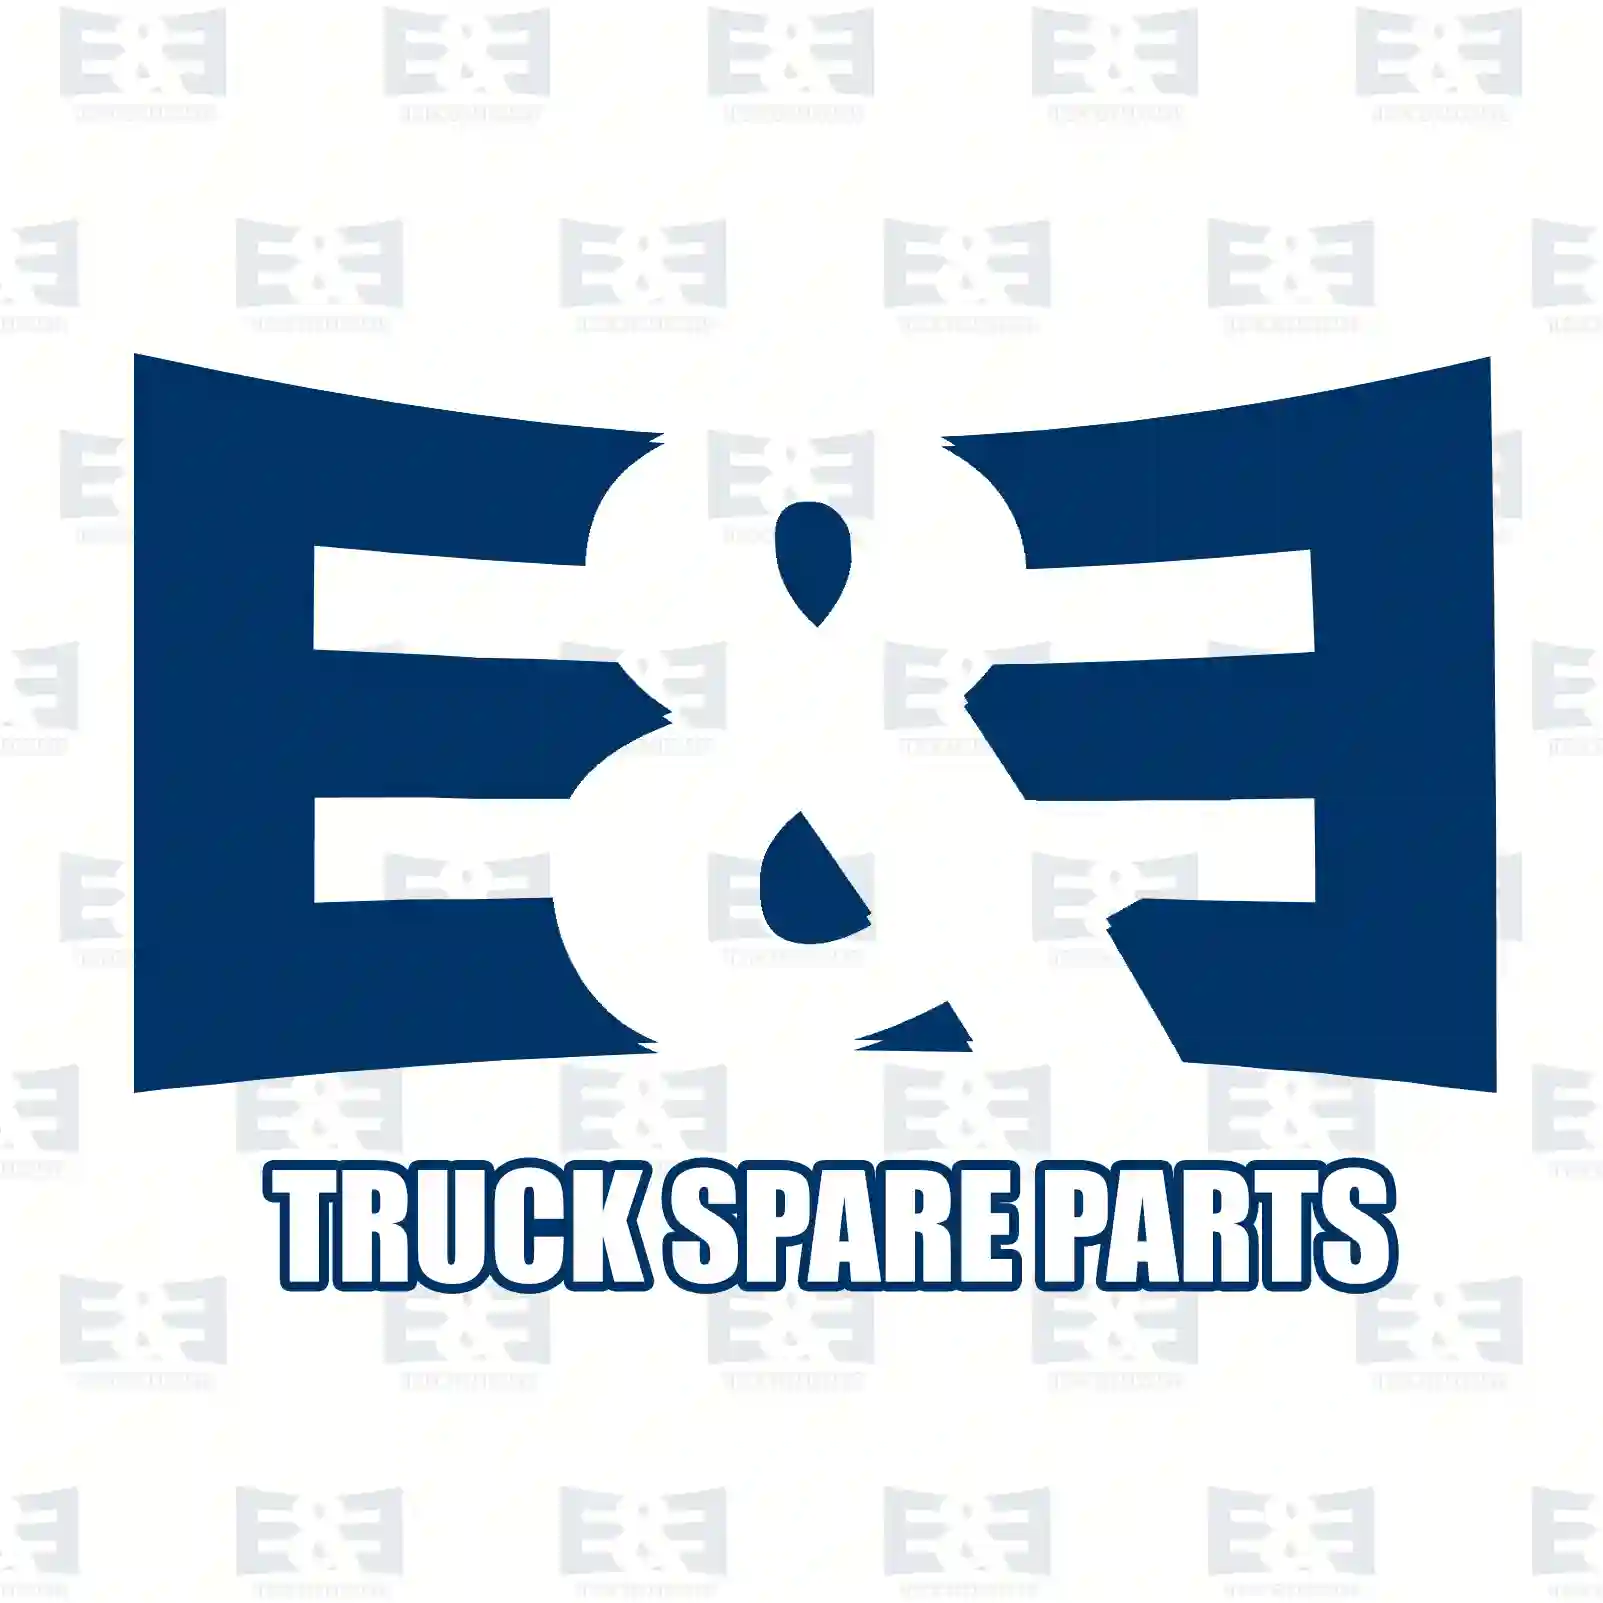 Disc brake pad kit, 2E2297482, 1135167, 1318139, 1415166, 1465166, 1465167, 1479223, 4053306, 4077636, YC15-2K021-AC, YC1J-2K021-AC ||  2E2297482 E&E Truck Spare Parts | Truck Spare Parts, Auotomotive Spare Parts Disc brake pad kit, 2E2297482, 1135167, 1318139, 1415166, 1465166, 1465167, 1479223, 4053306, 4077636, YC15-2K021-AC, YC1J-2K021-AC ||  2E2297482 E&E Truck Spare Parts | Truck Spare Parts, Auotomotive Spare Parts